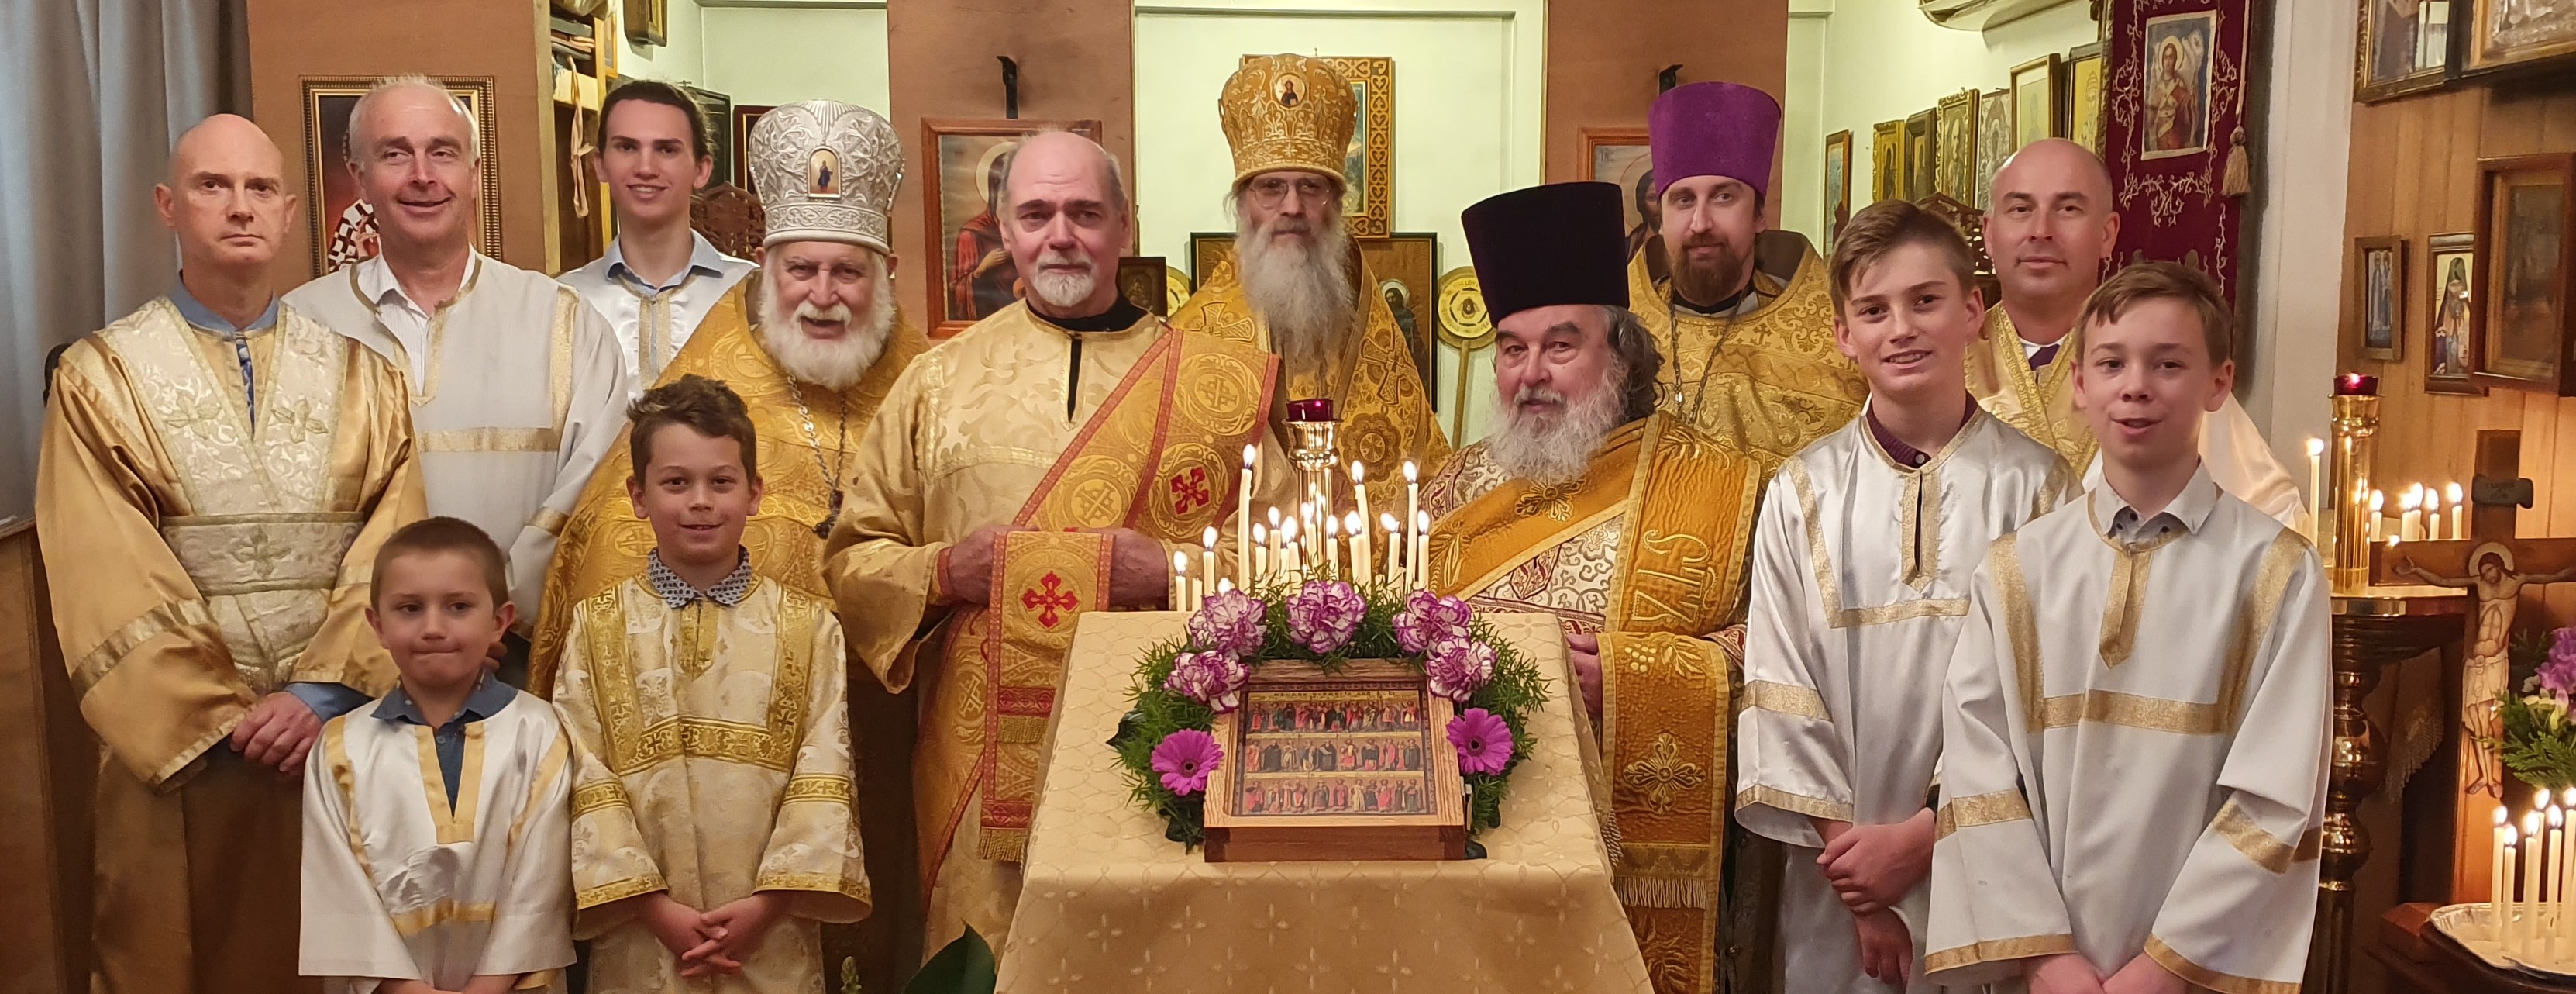 Награды духовенству / Clergy awarded